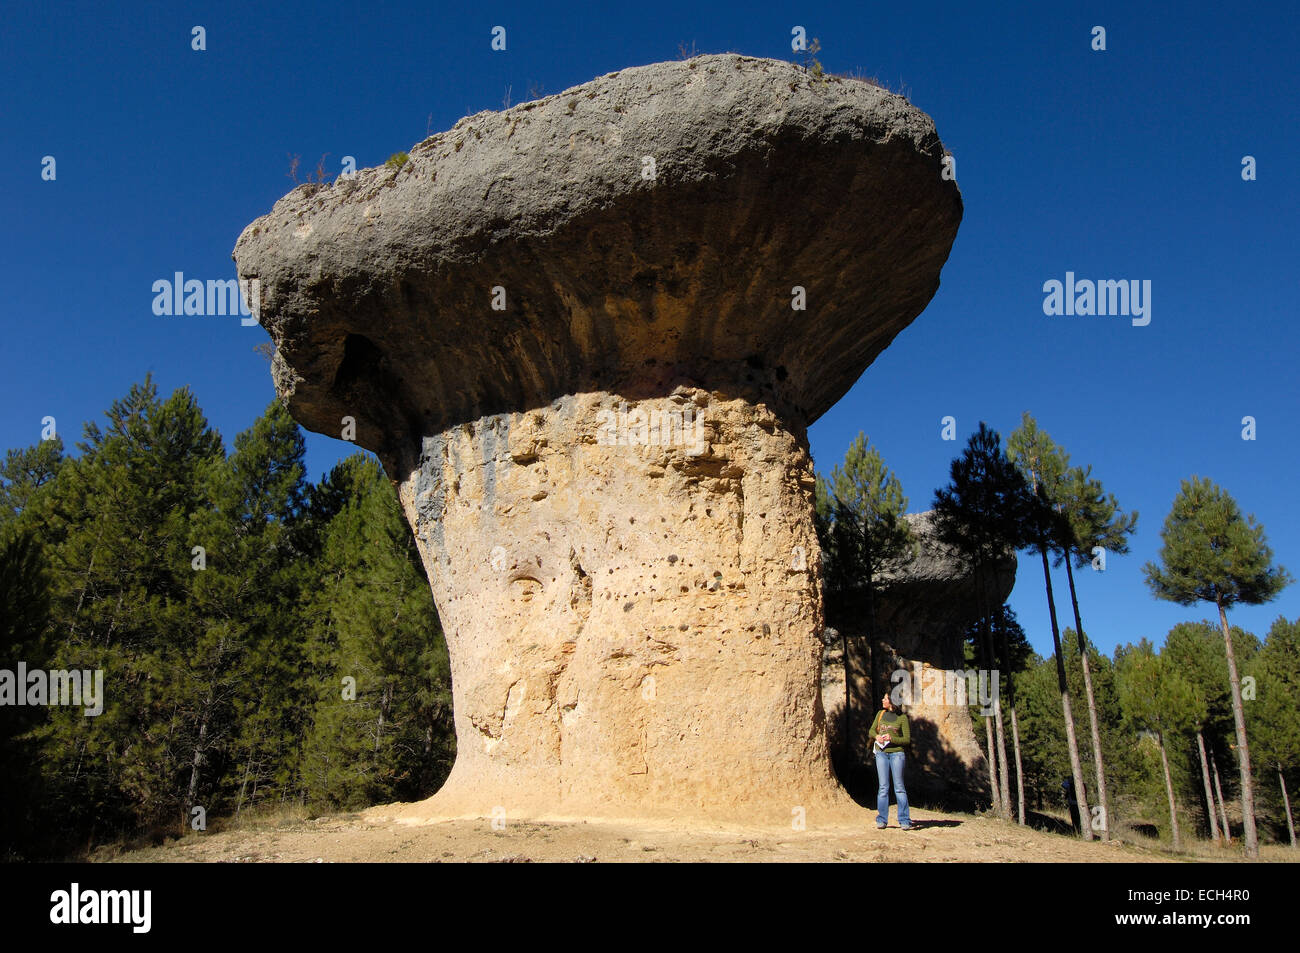 Fungus, rock formations at the Enchanted City, La Ciudad Encantada, Cuenca province, Castilla-La Mancha, Spain, Europe Stock Photo